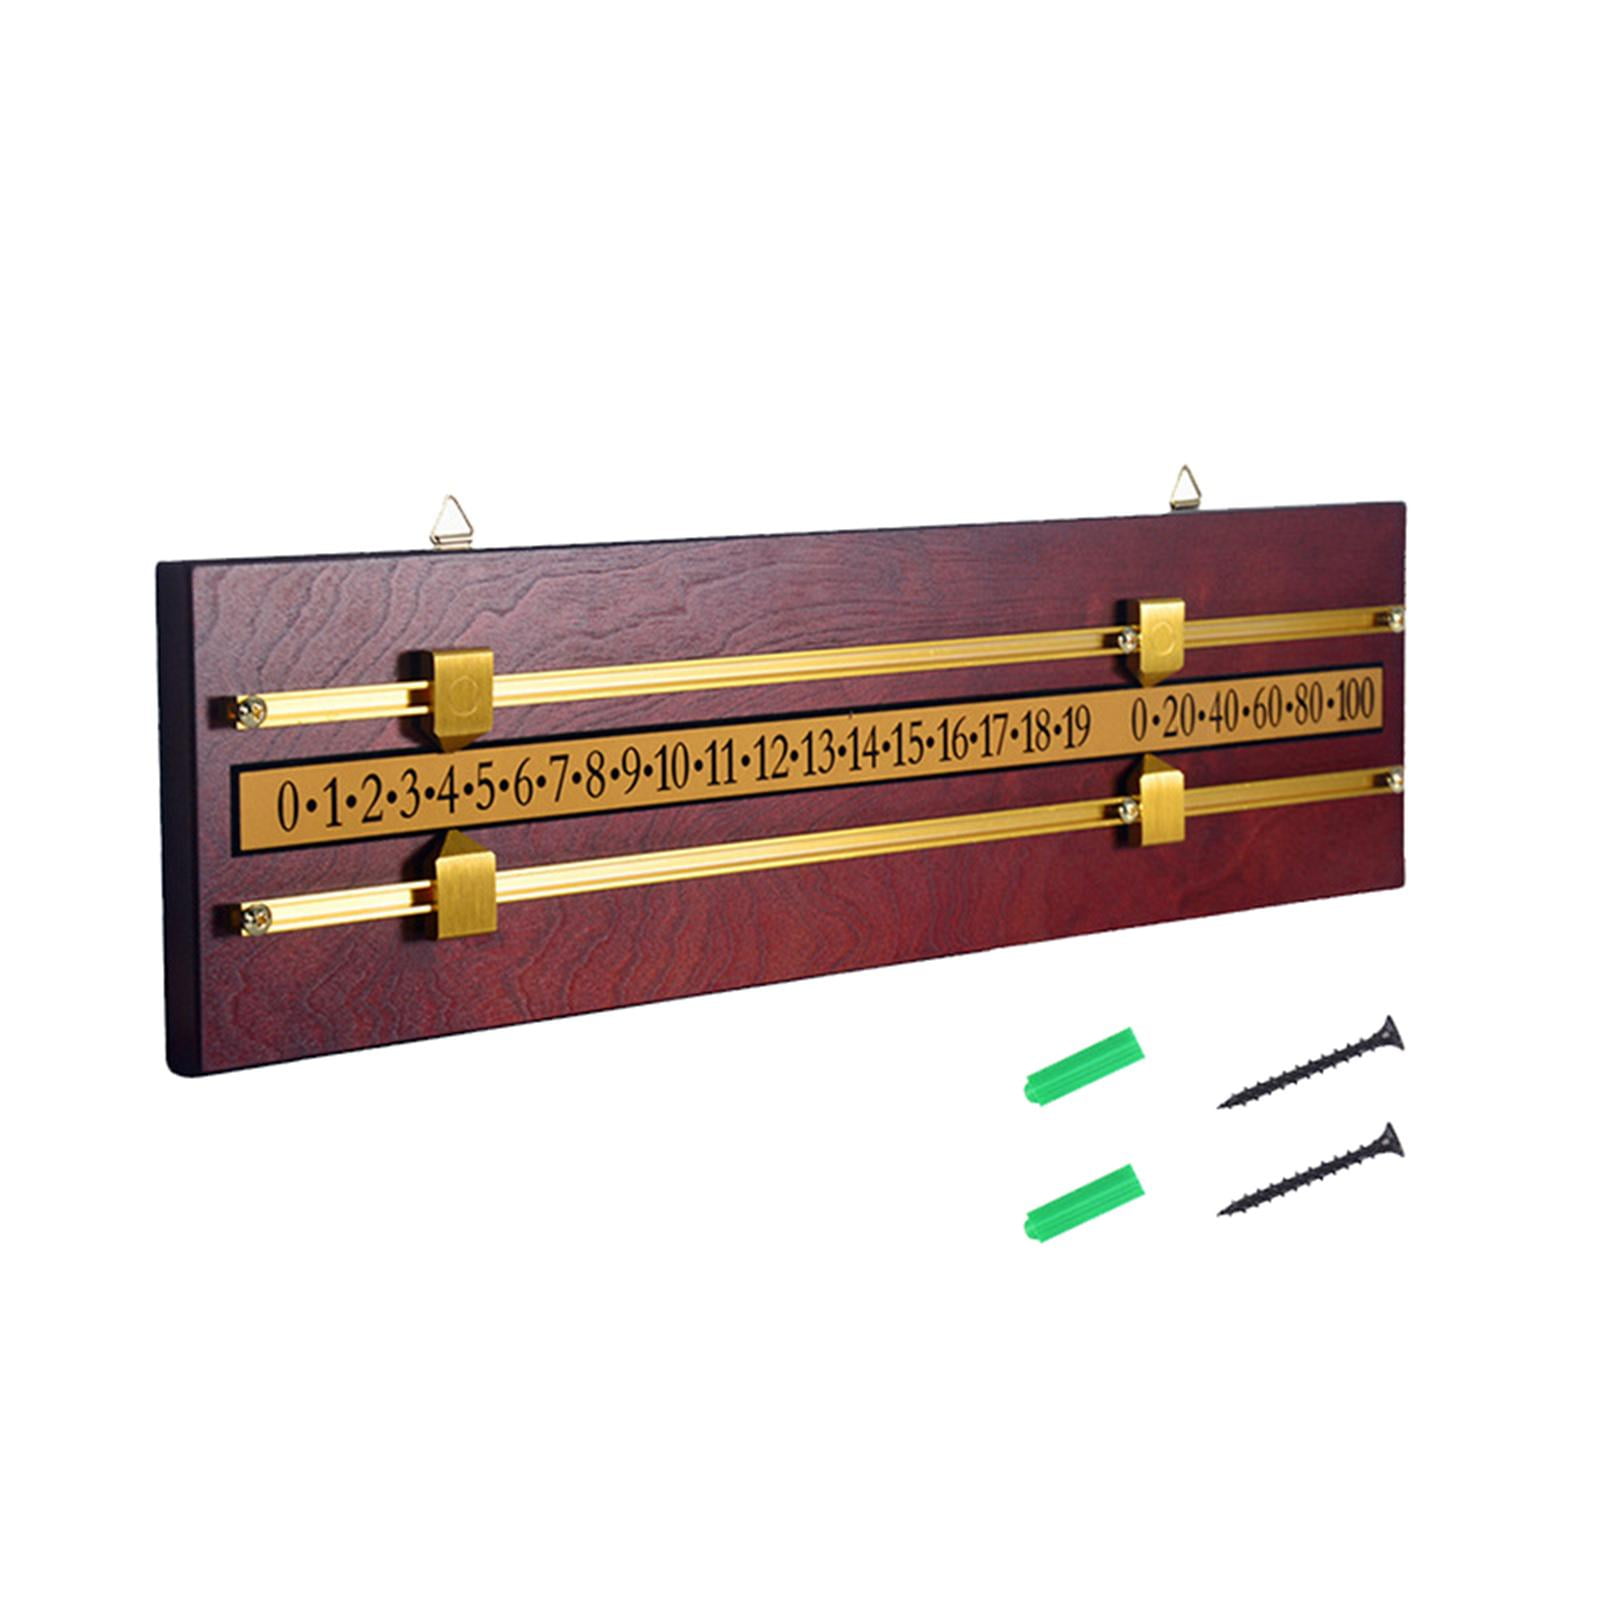 Wood Shuffleboard Scoreboard Billiard Score Keeper Counters Referee Gear Scoring Device Accessories Tabletop Games Score Board